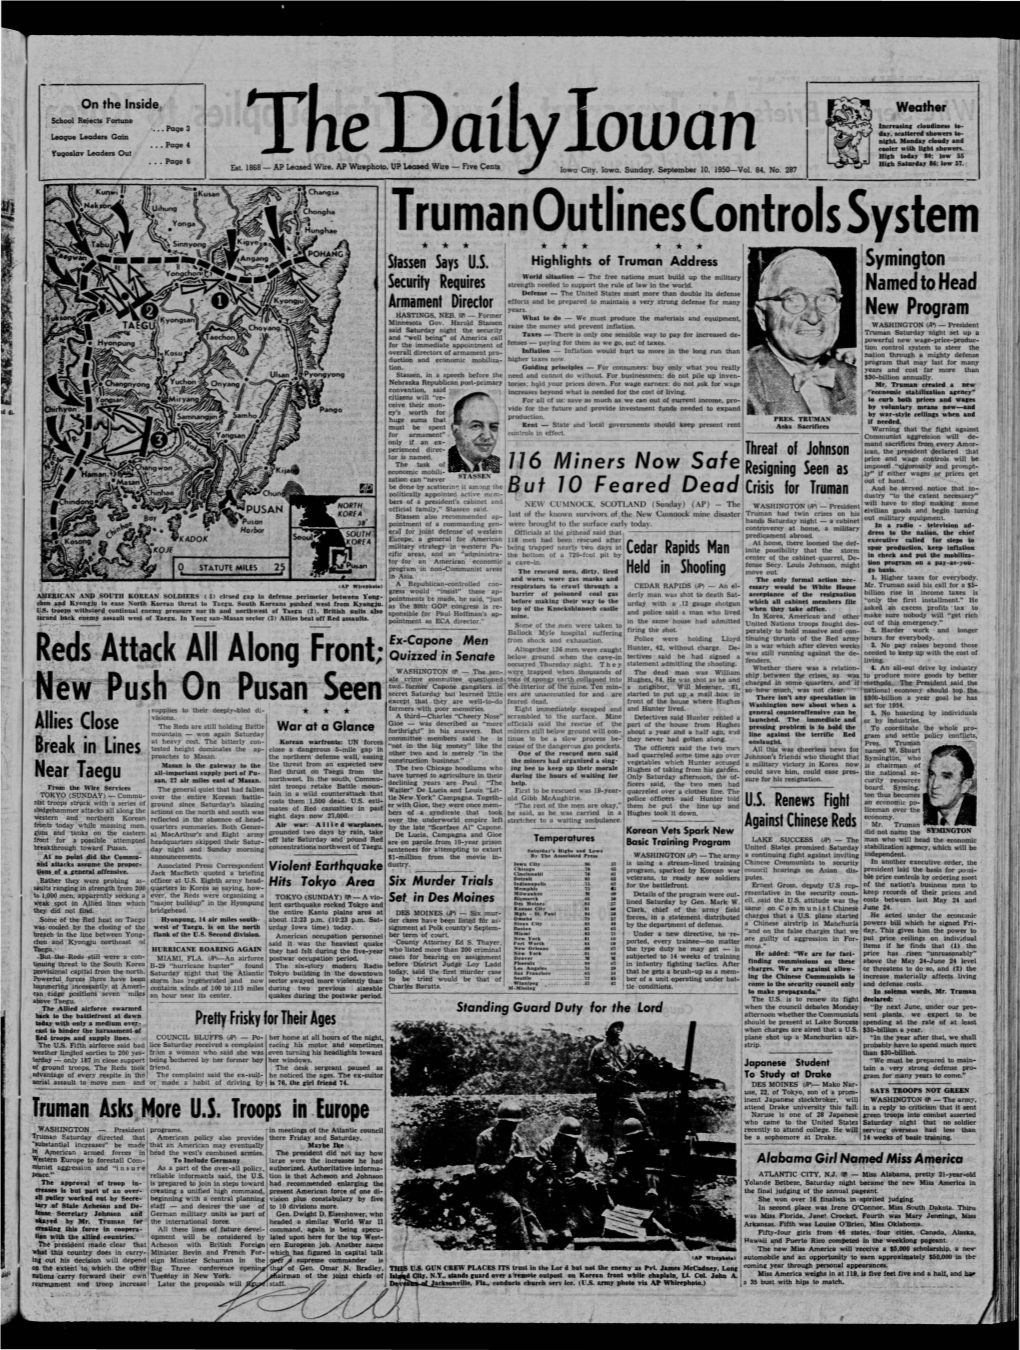 Daily Iowan (Iowa City, Iowa), 1950-09-10